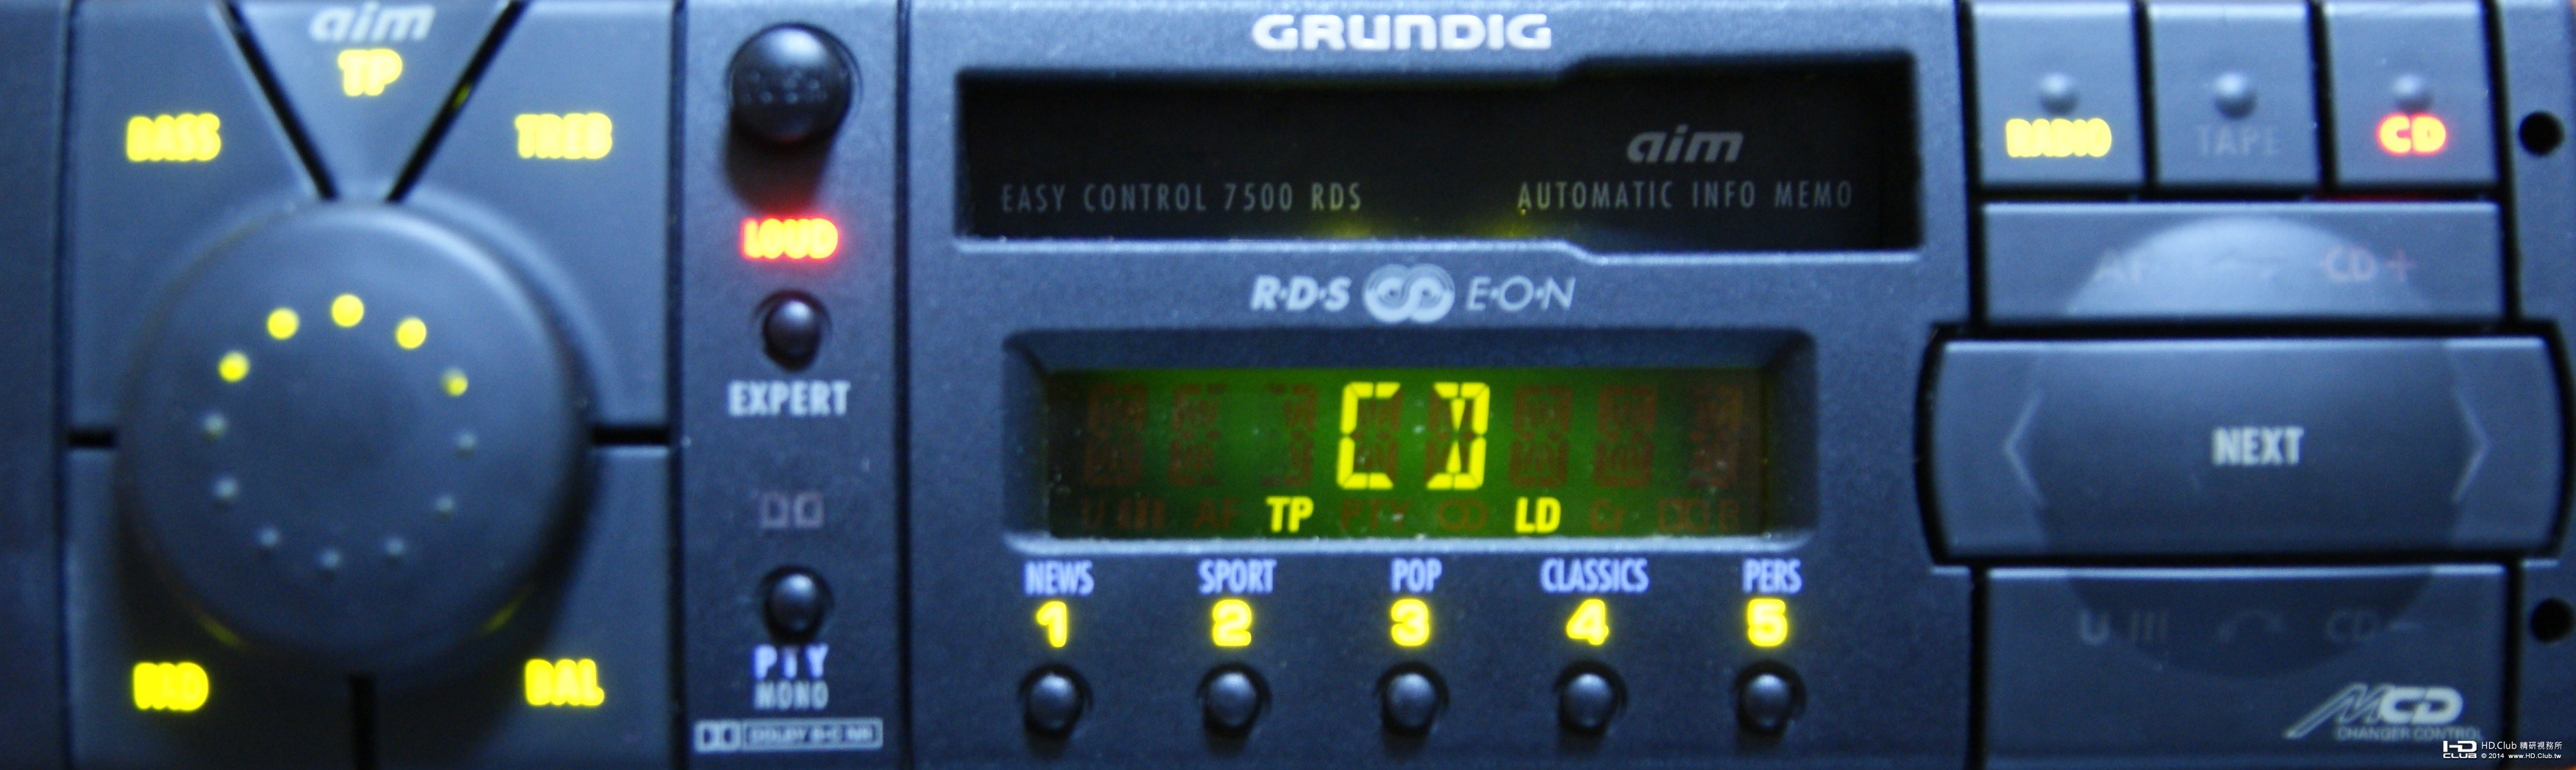 GRUNDIG EC 7500 RDS (1).jpg